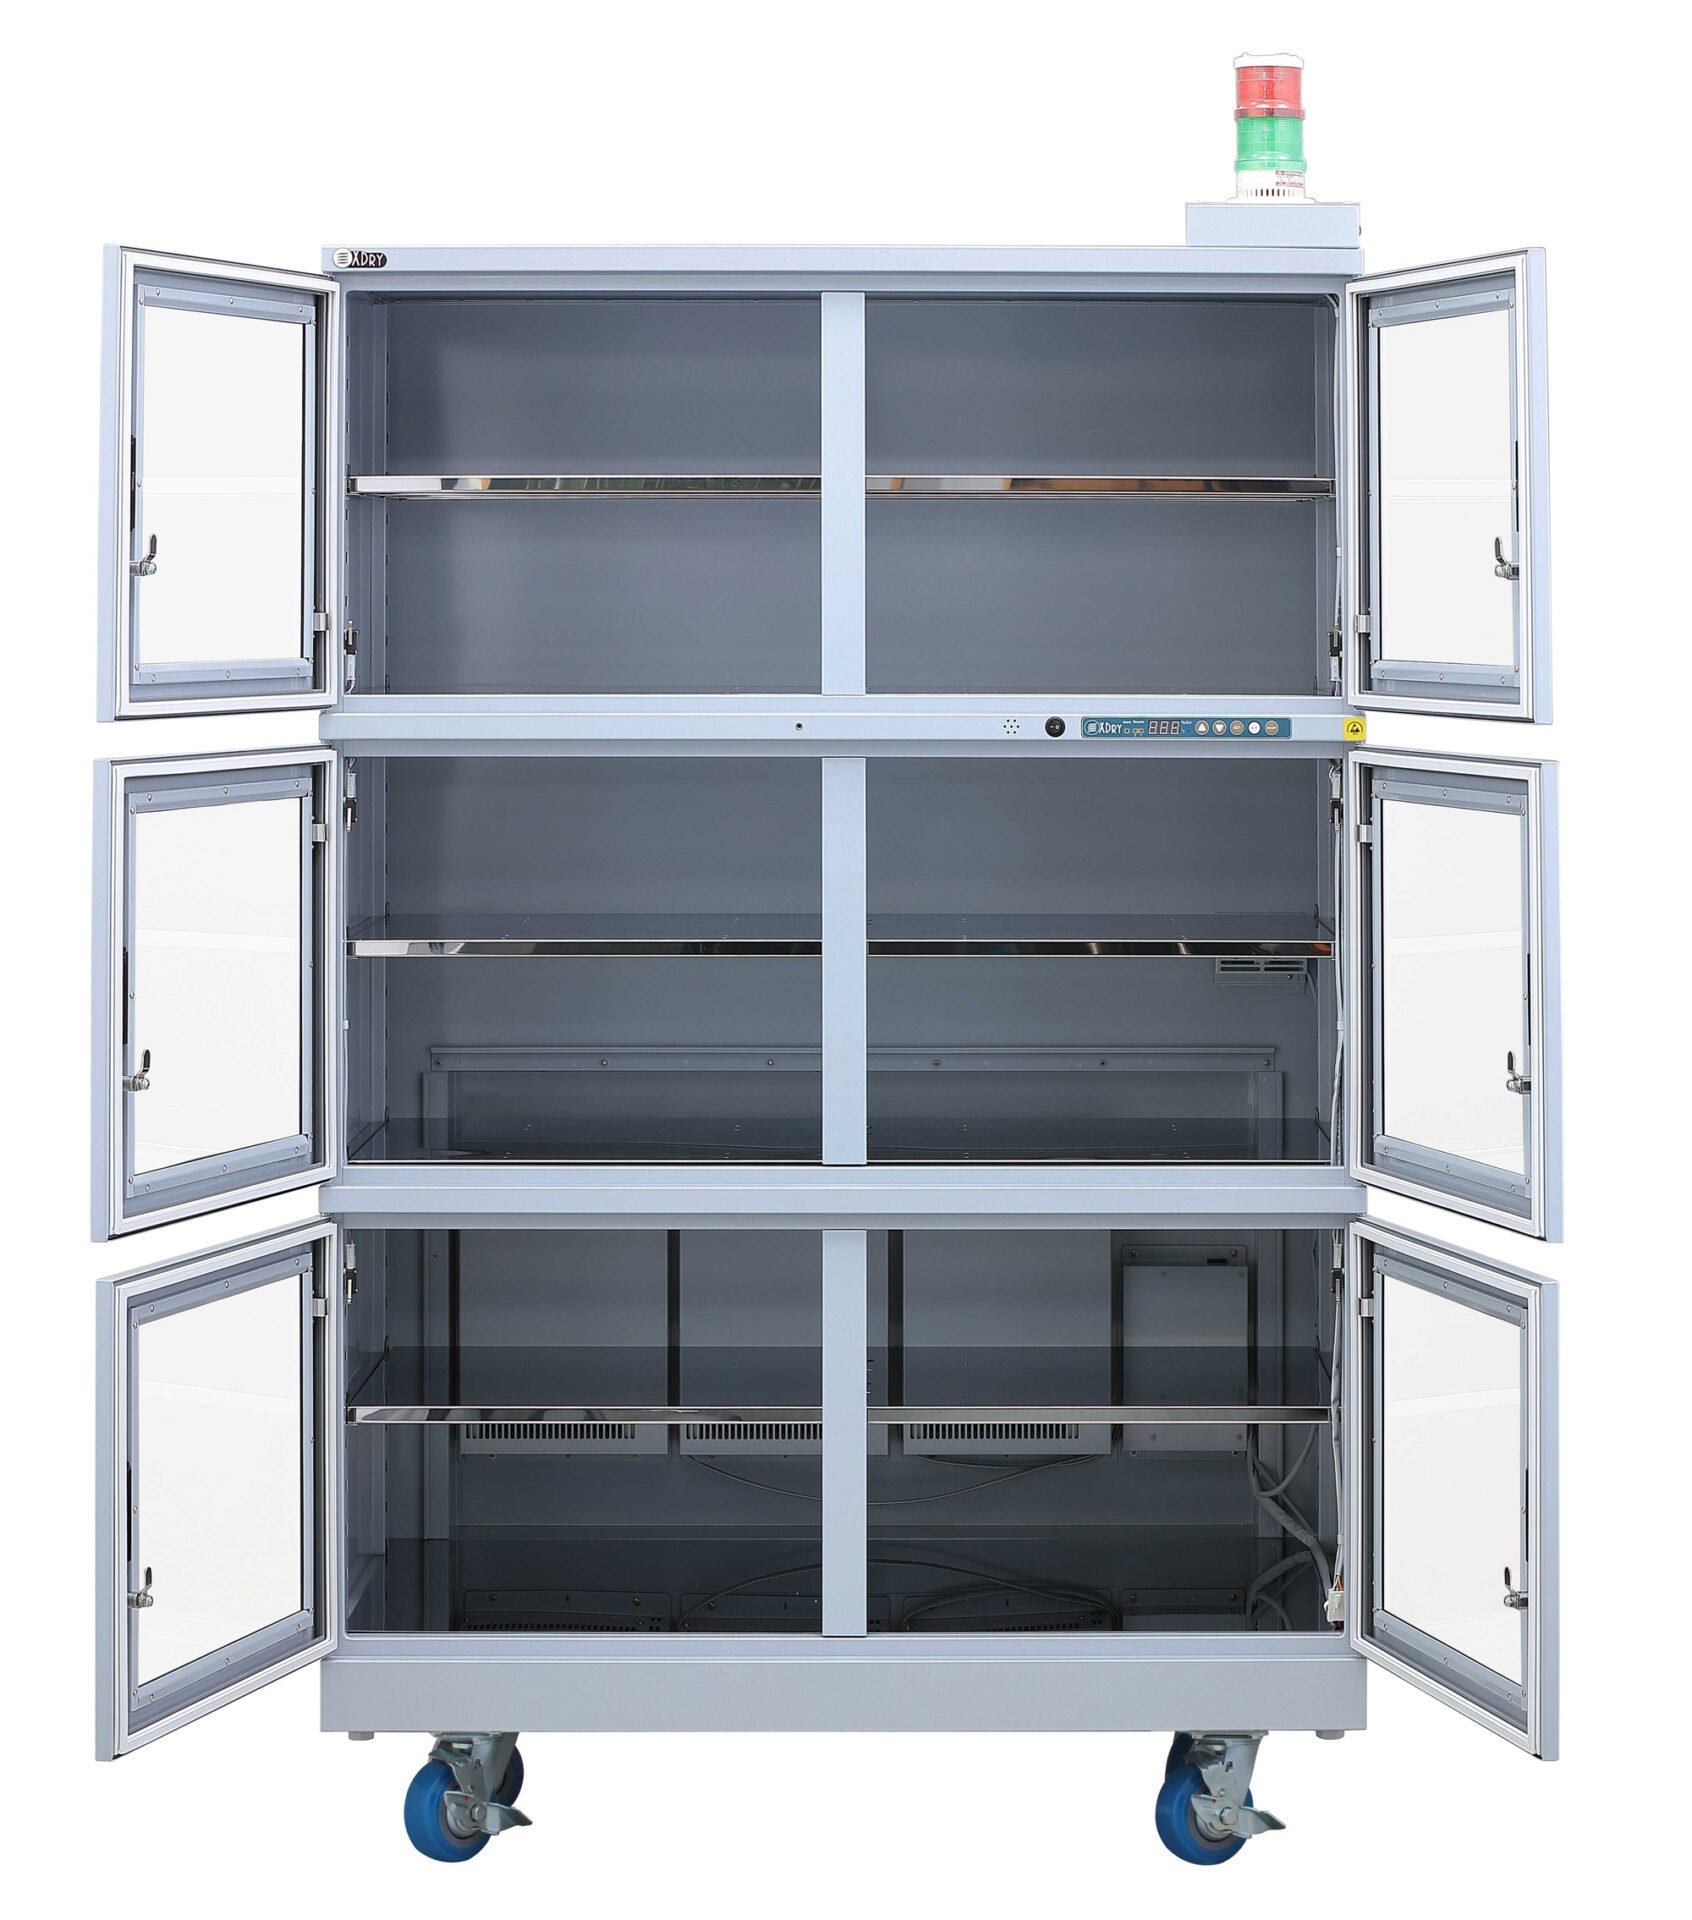 Dry Cabinet Ipc Jedec 033 020